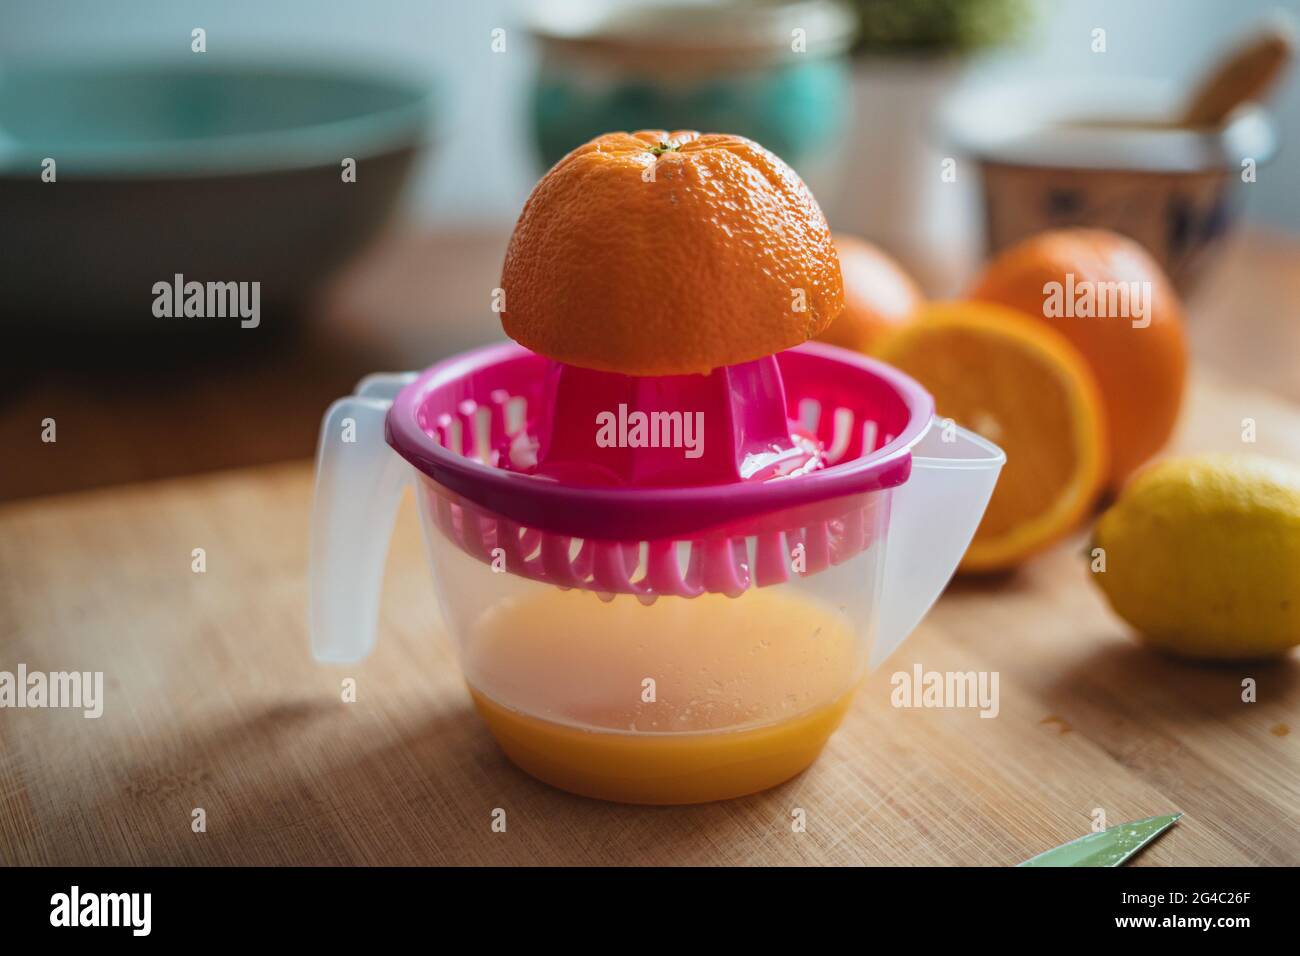 Eine Orange auf einer Quetschpresse, bevor sie gepresst wird, um Orangensaft zu machen. Stockfoto